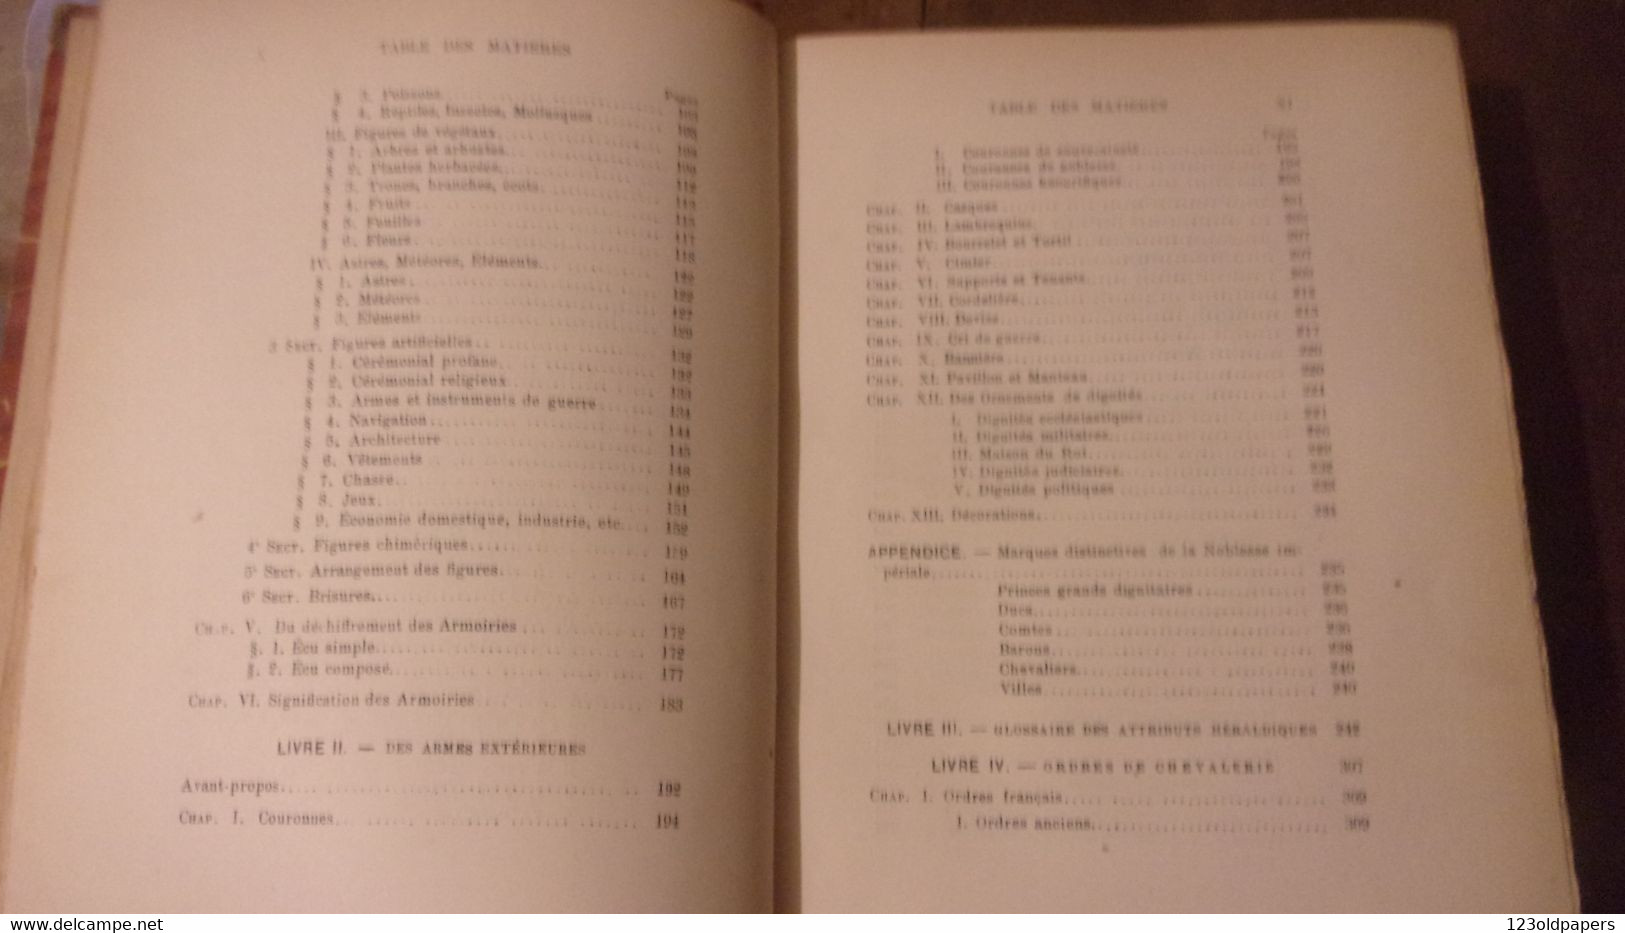 ♥️ 1885 HERALDISME - GENEALOGIE Abrégé méthodique de la science des armoiries  Maigne, W., Girard-Augry, Pierre